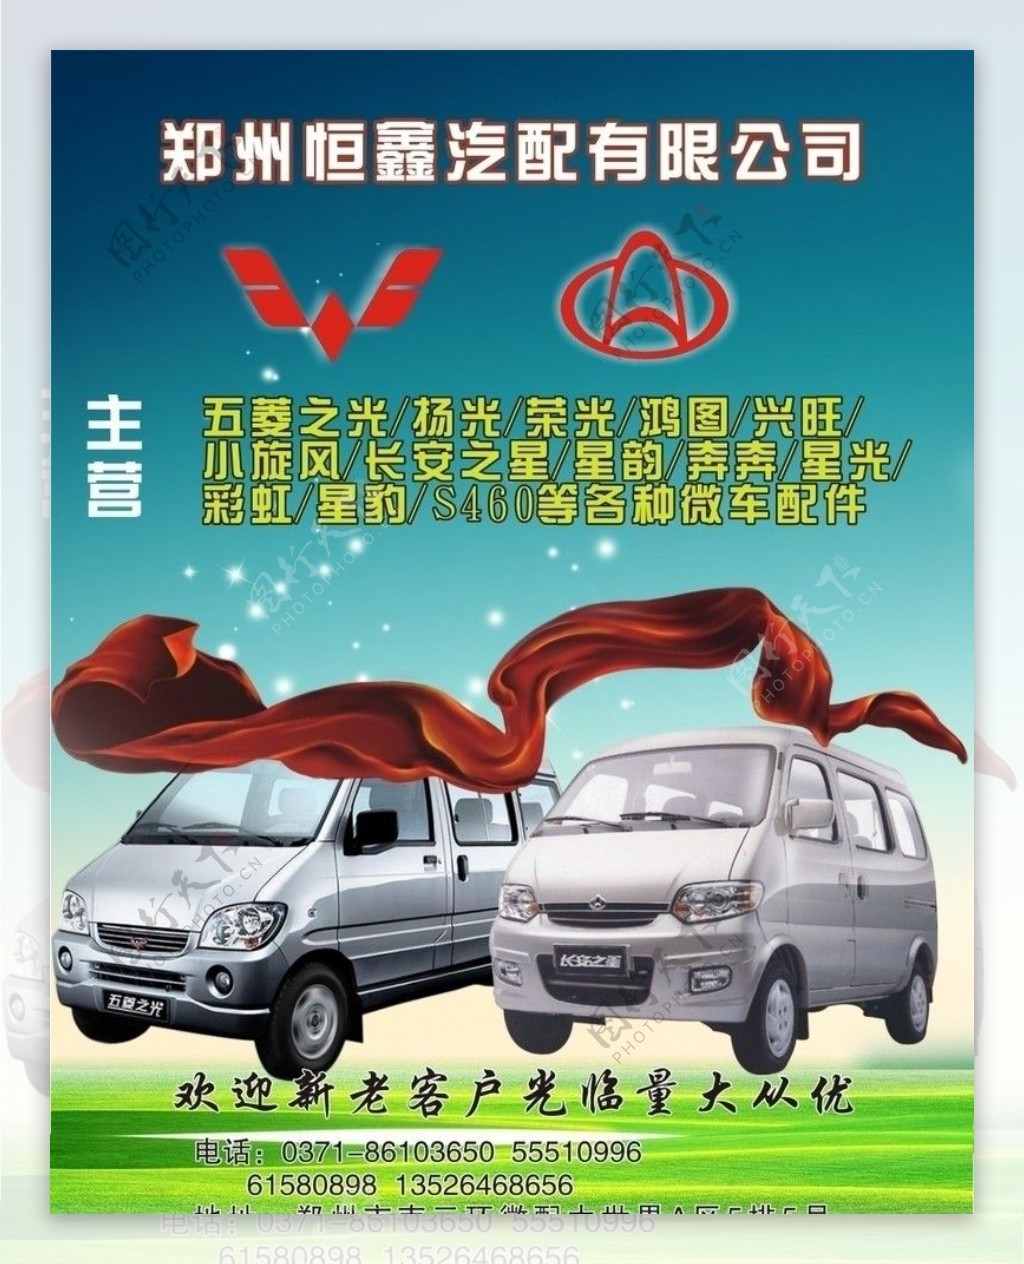 五菱长安之星海报广告背景汽车图片